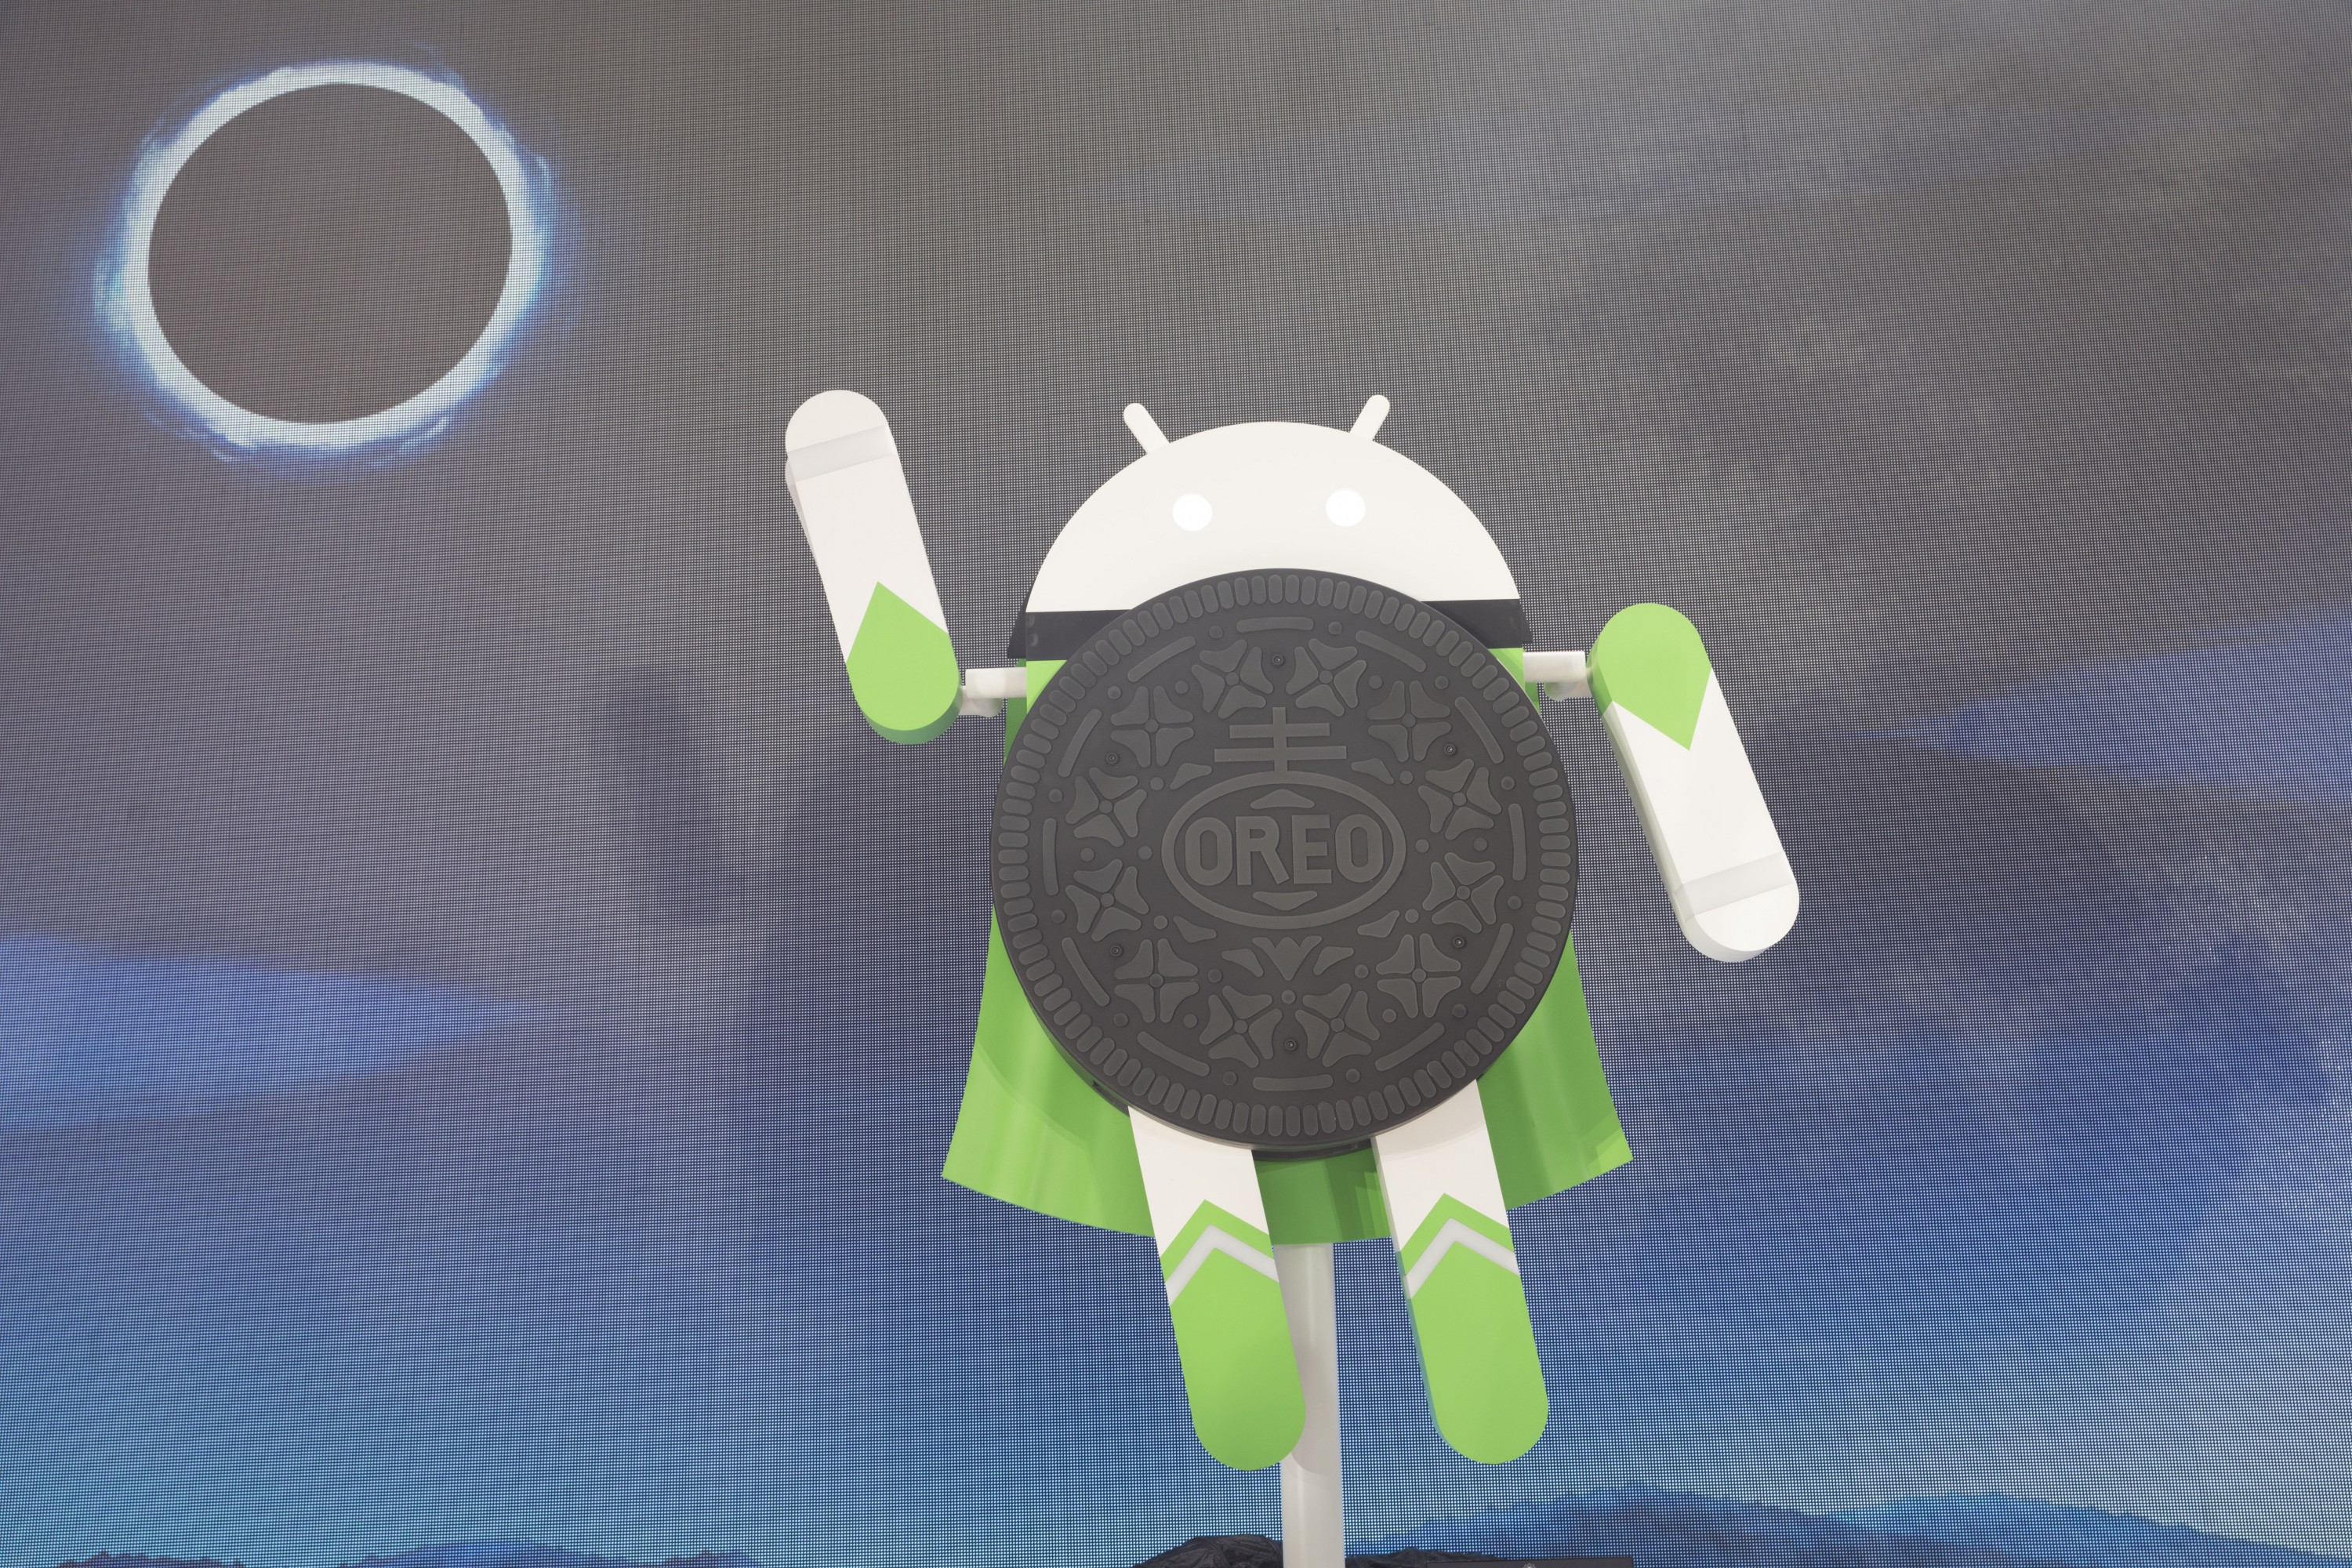 Официальное имя новой ОС Android O — Oreo. Несмотря на официальный выход пока ее не получил ни один смартфон